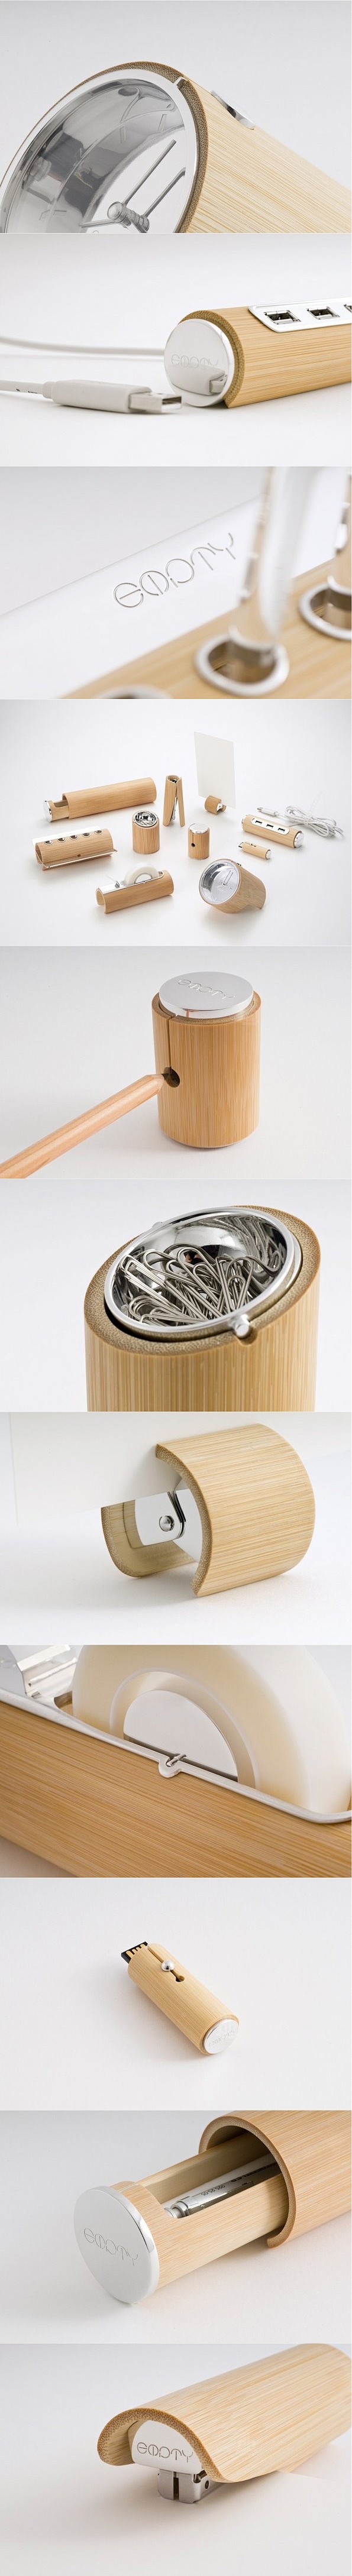 中国留学生Yu Jian利用竹子创作的一...